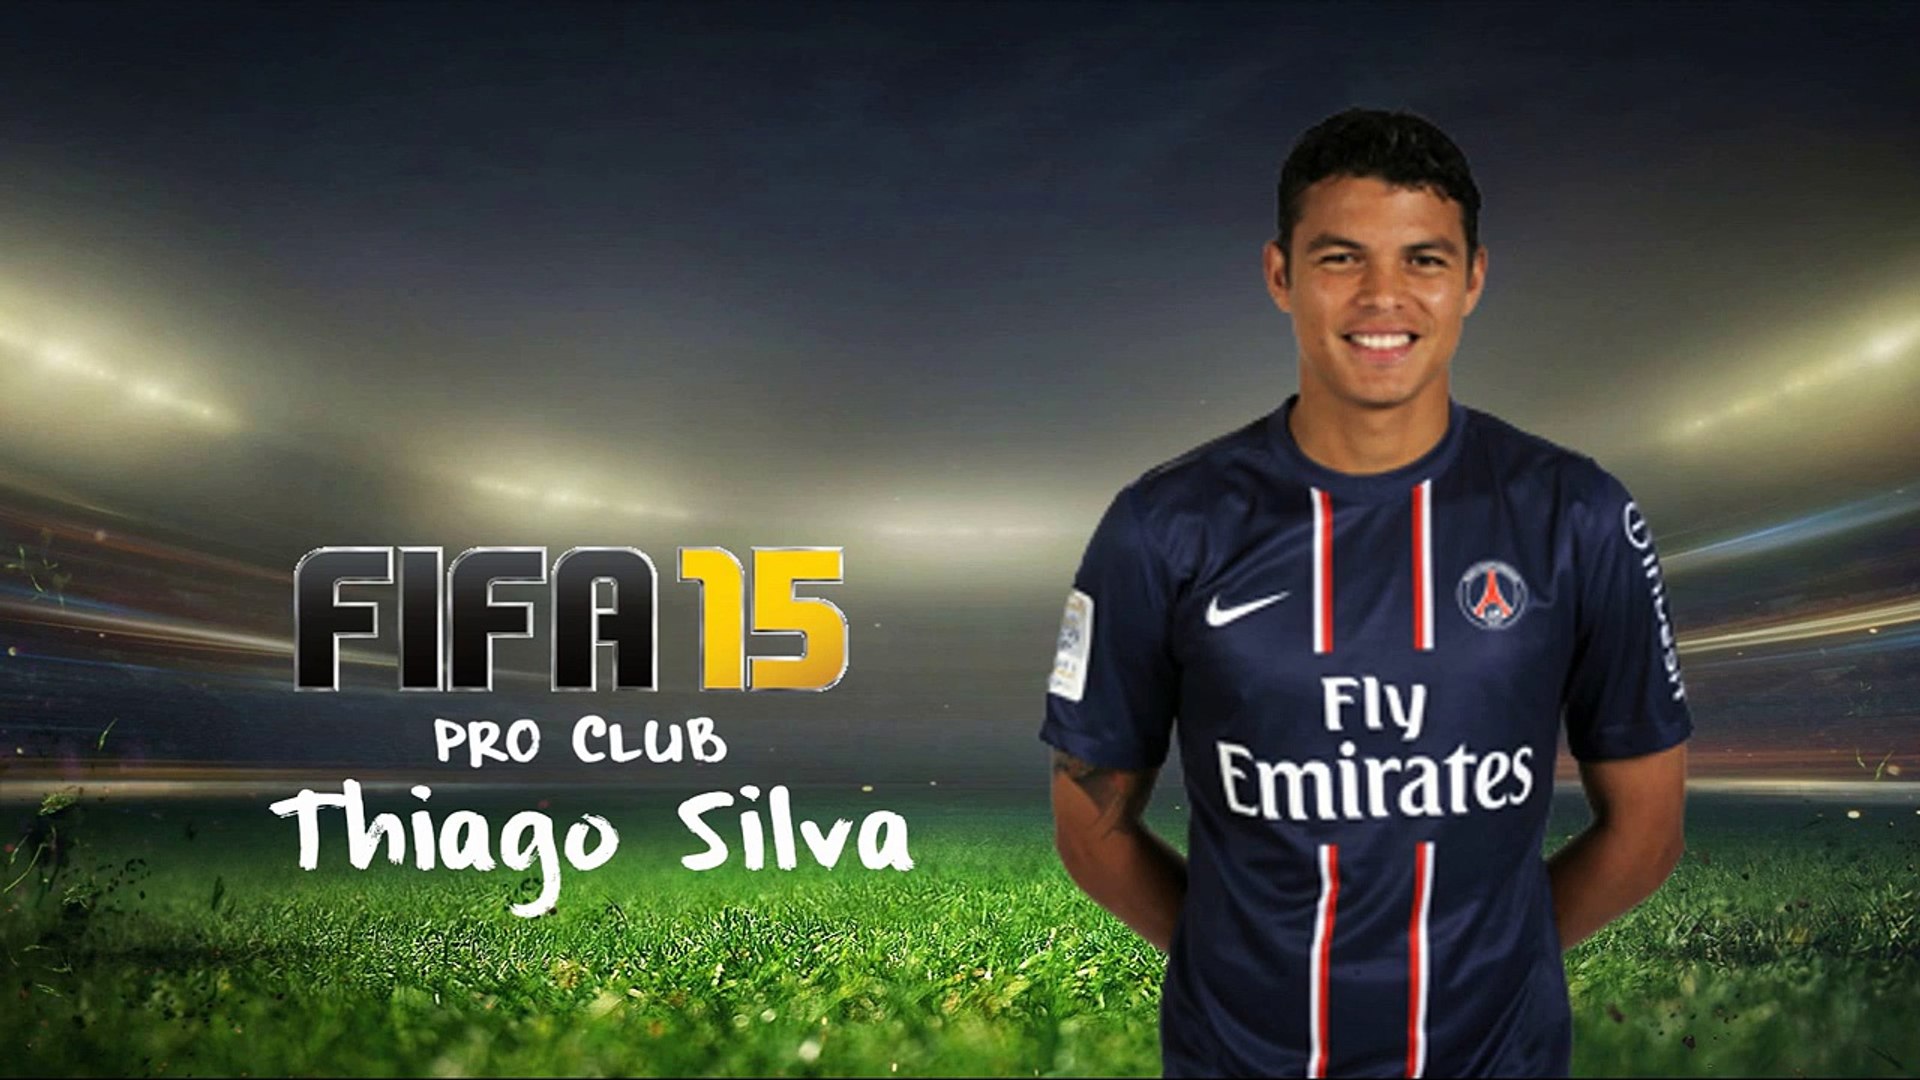 Fifa 15 Pro Club Come Fare Thiago Silva Video Dailymotion